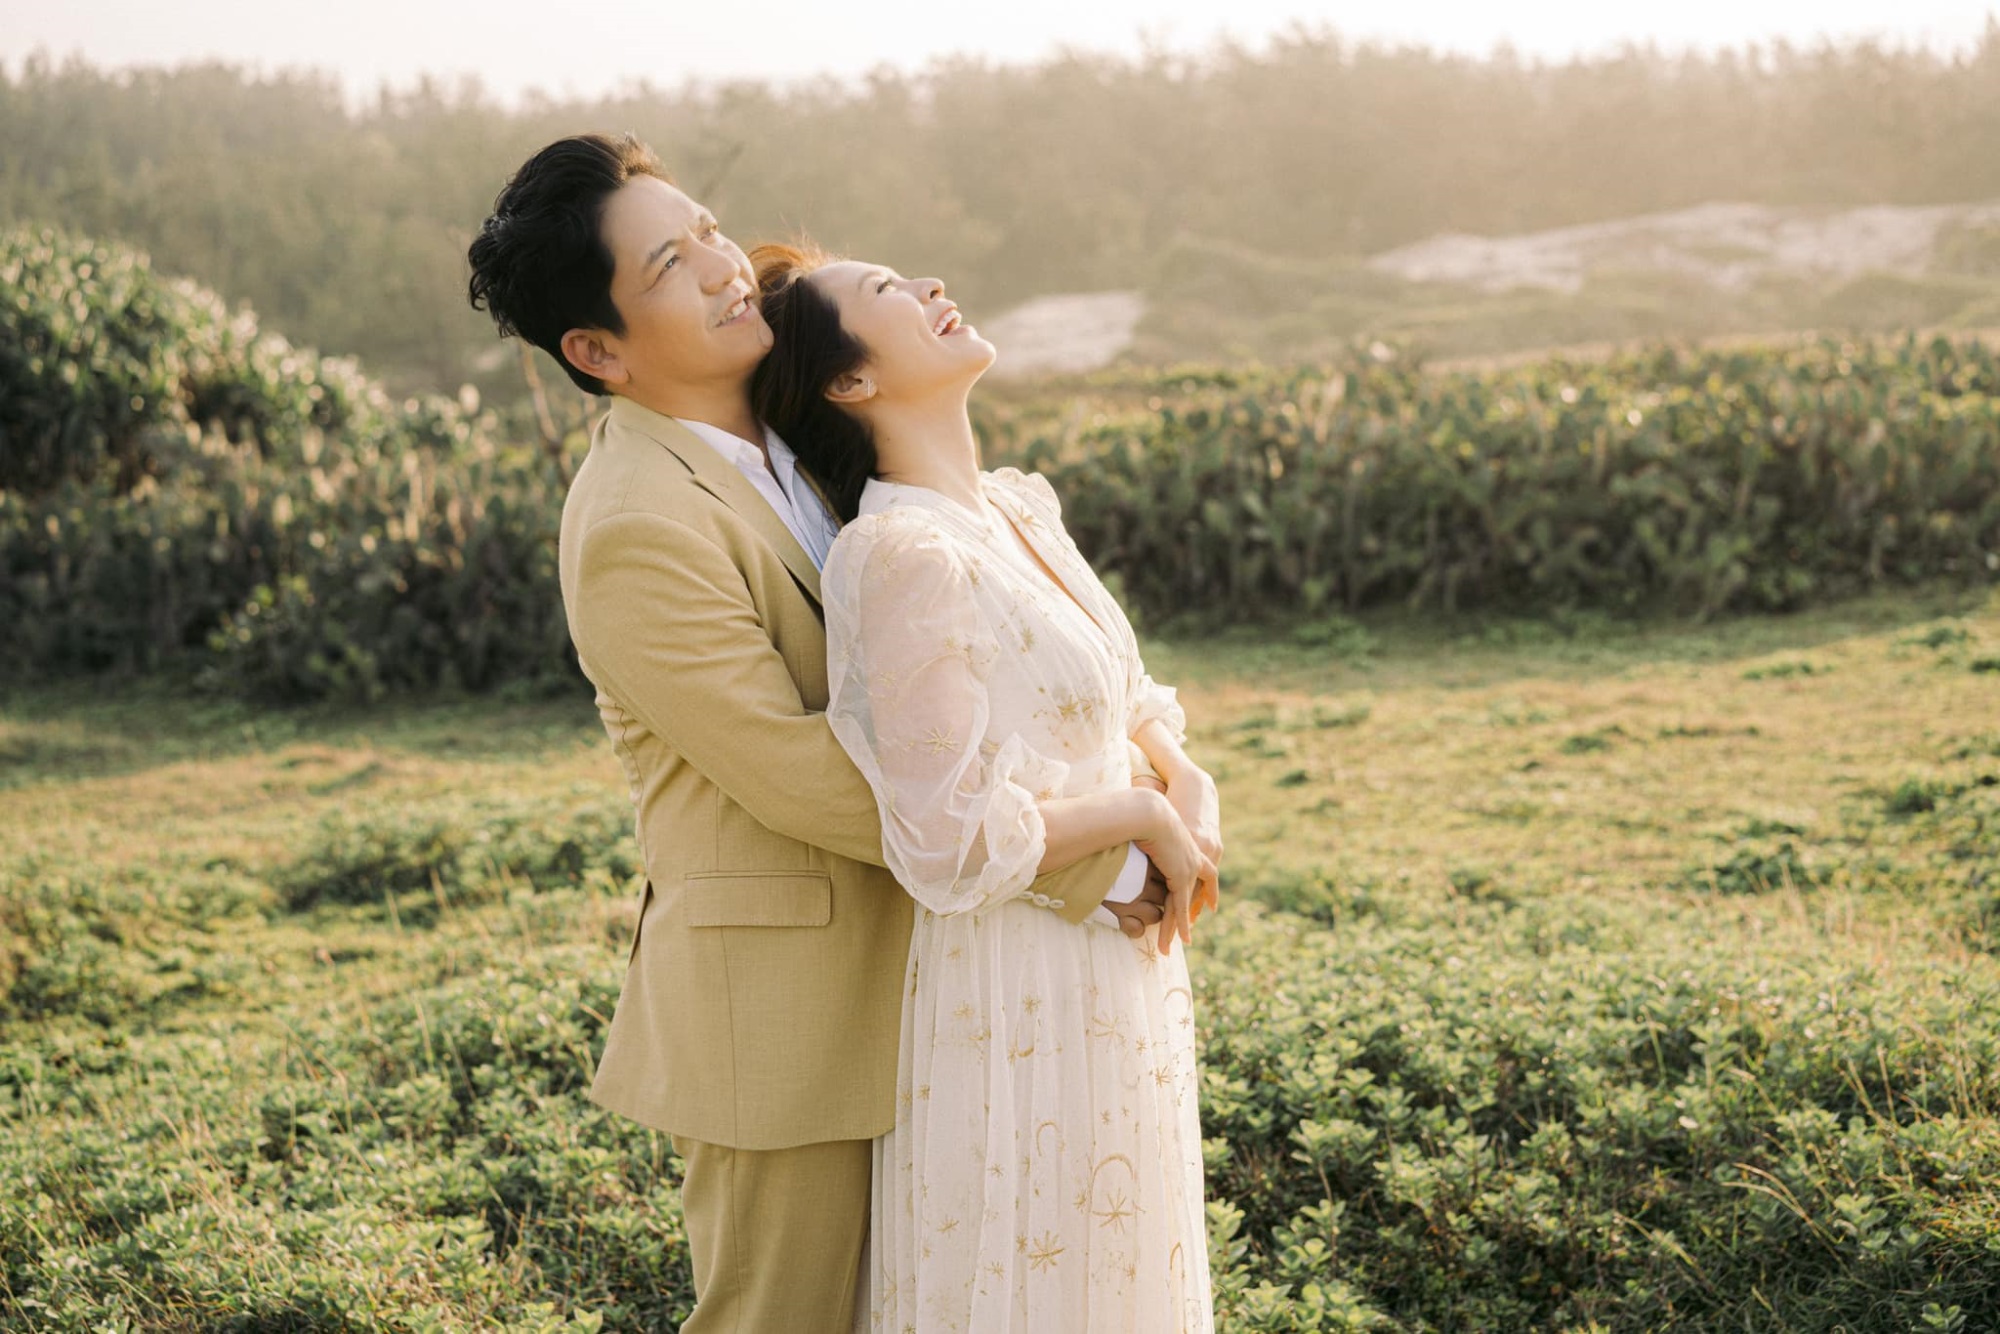 Nhân dịp kỷ niệm 14 năm ngày cưới, Đức Thịnh gửi đôi lời ngọt ngào đến Thanh Thúy khiến netizen không khỏi phần xúc động, ghen tị với cặp đôi - Ảnh 3